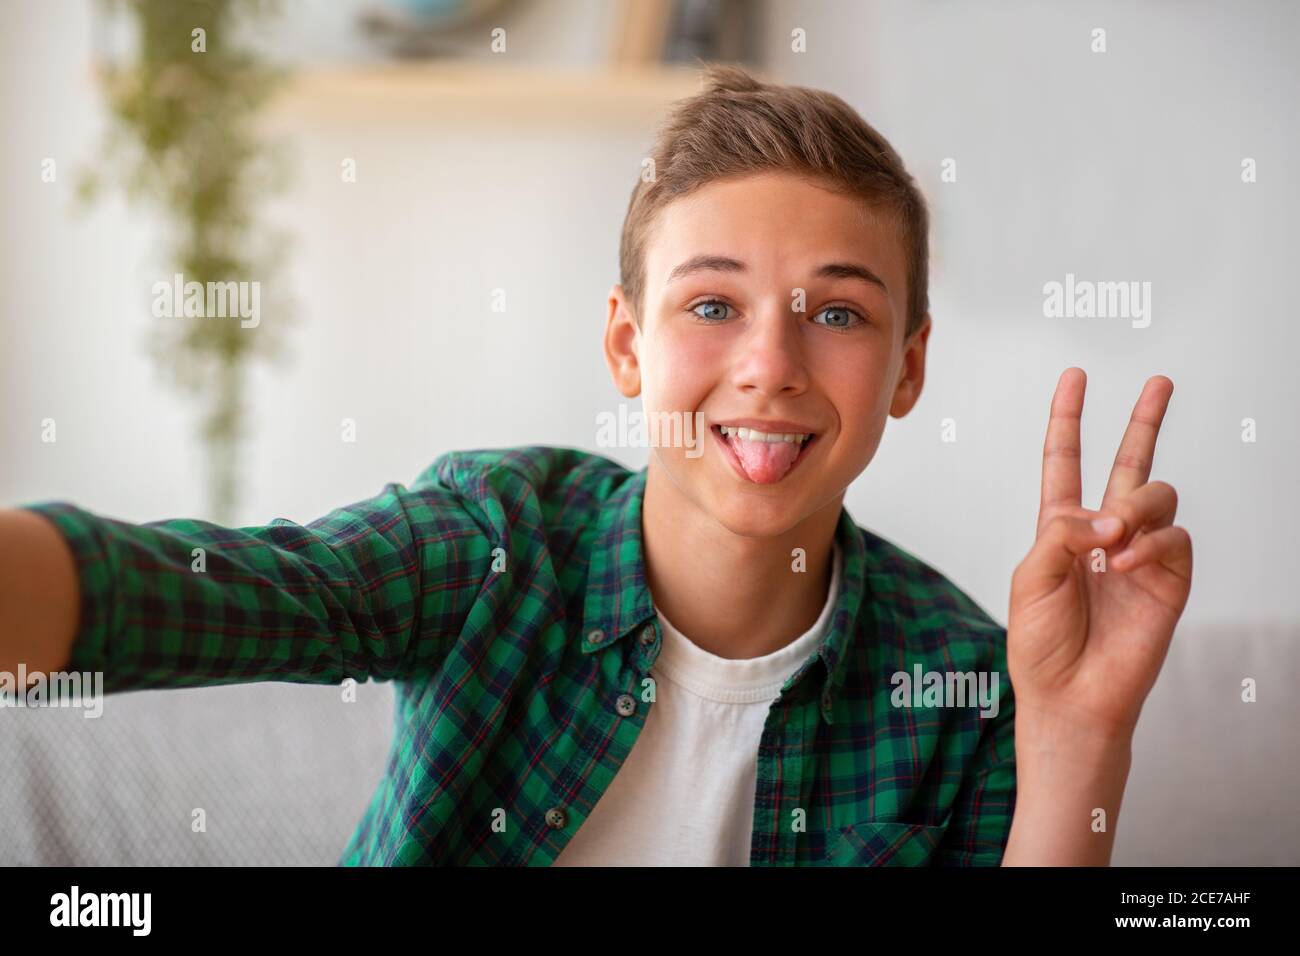 Adorable jeune garçon prenant le selfie, montrant la langue et le geste de paix Banque D'Images